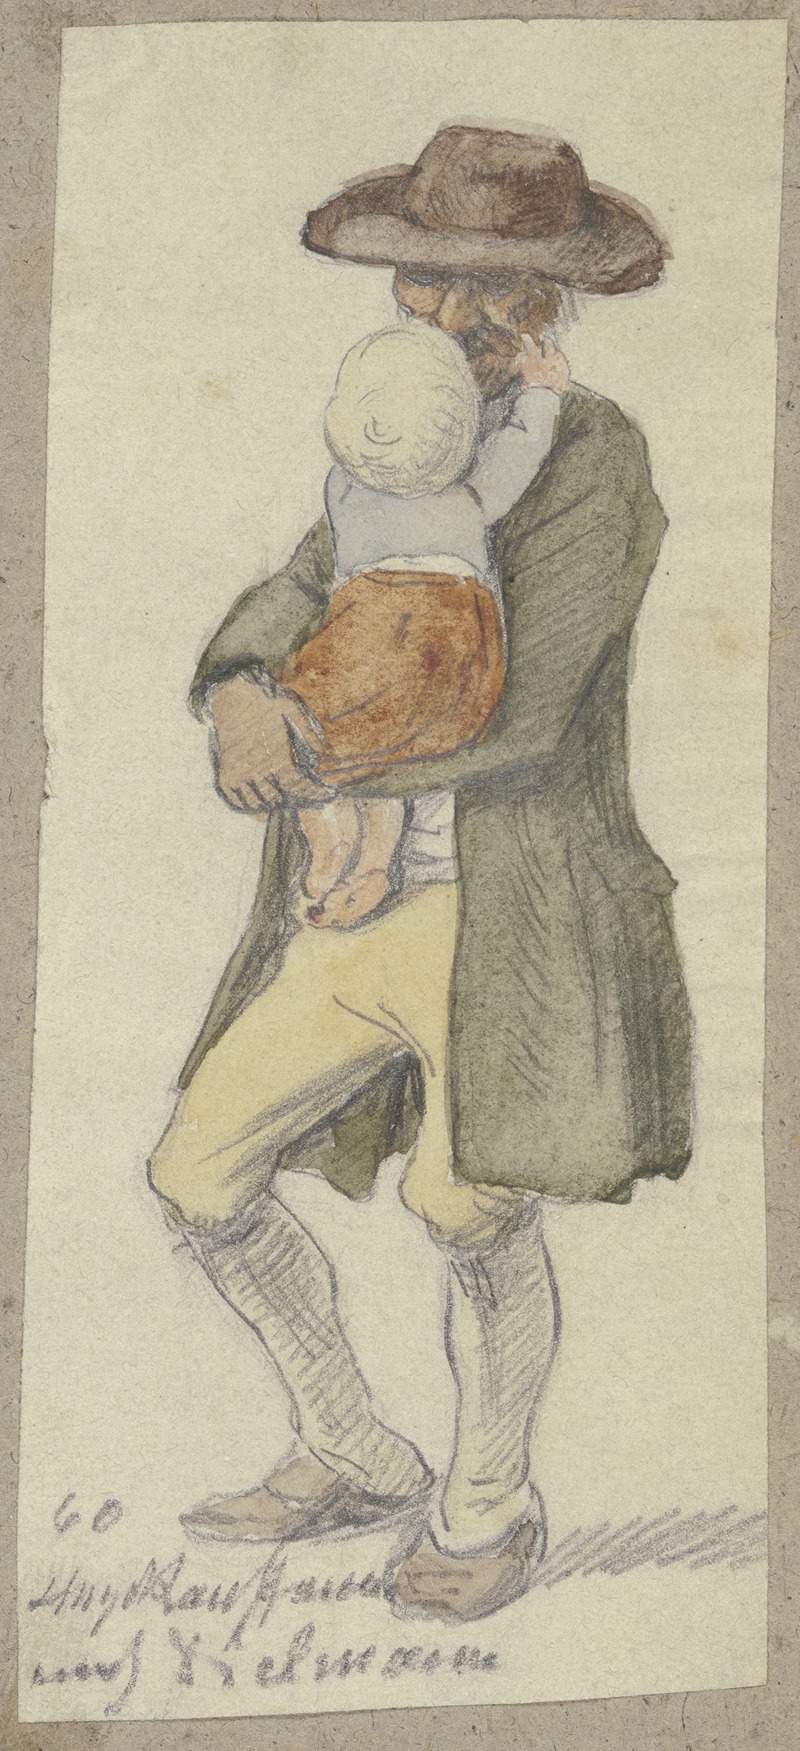 Hugo Kauffmann - Farmer with child on his arm